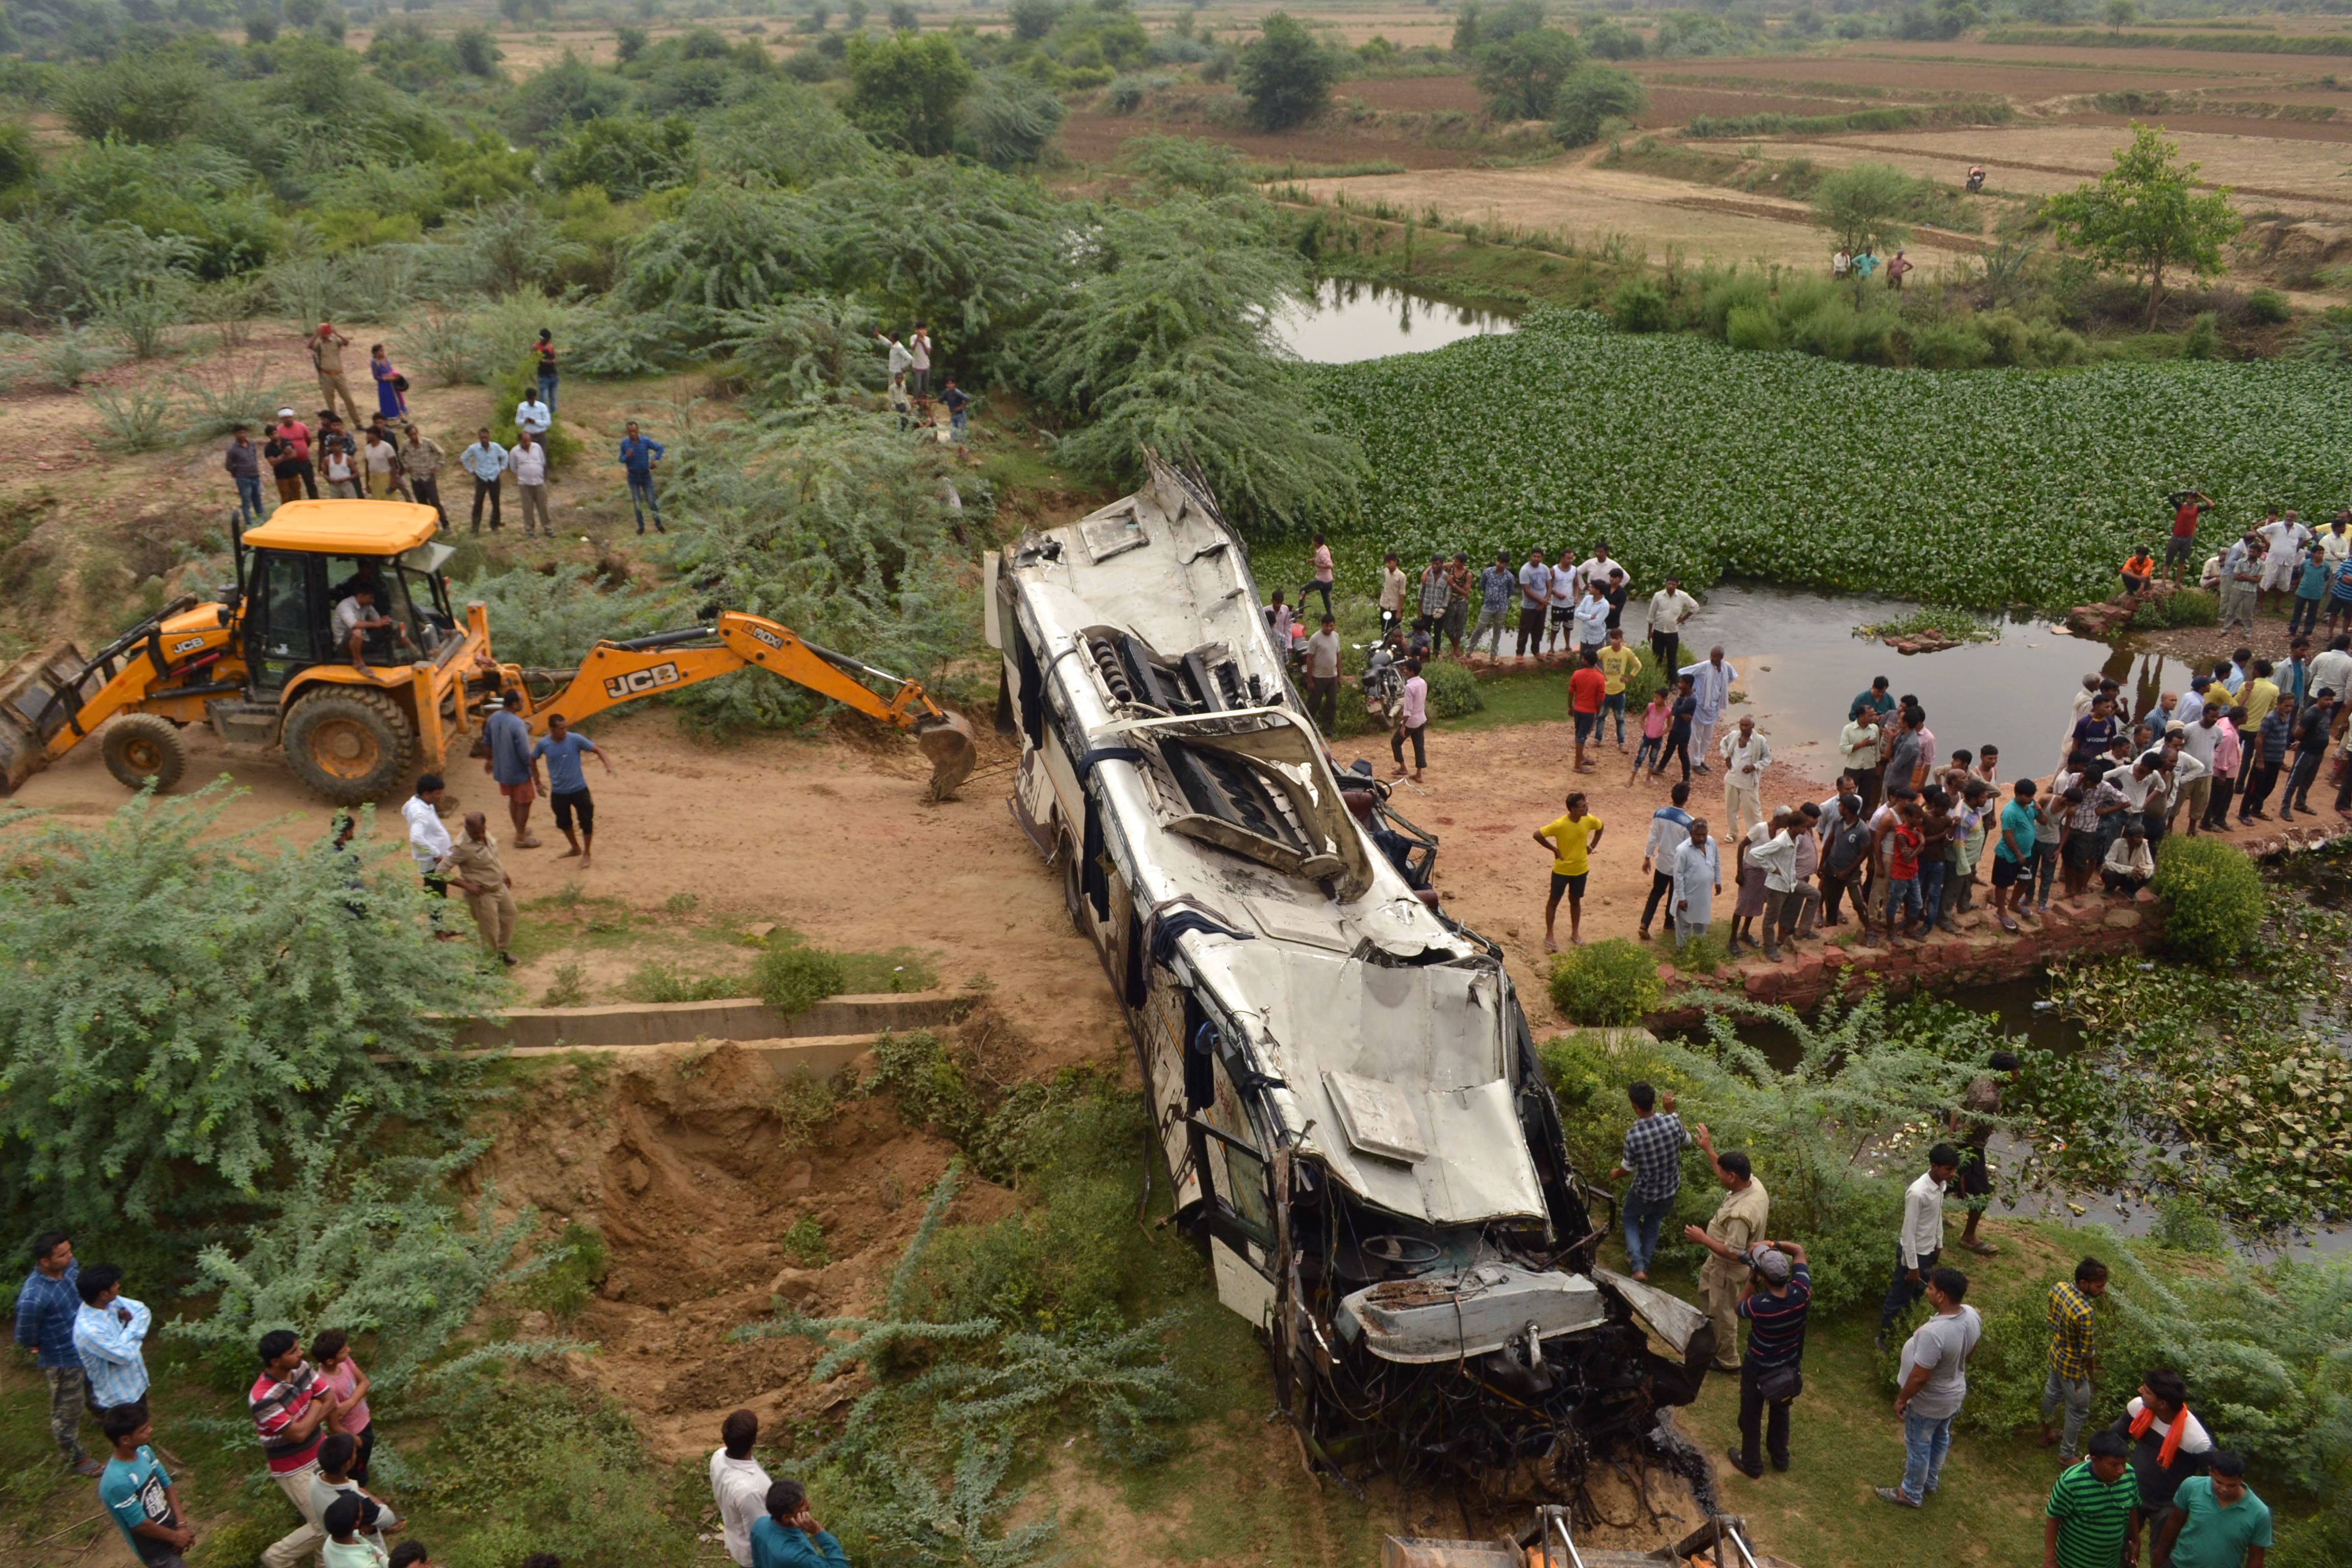 Huszonkilencen halhattak meg egy indiai buszbalesetben 